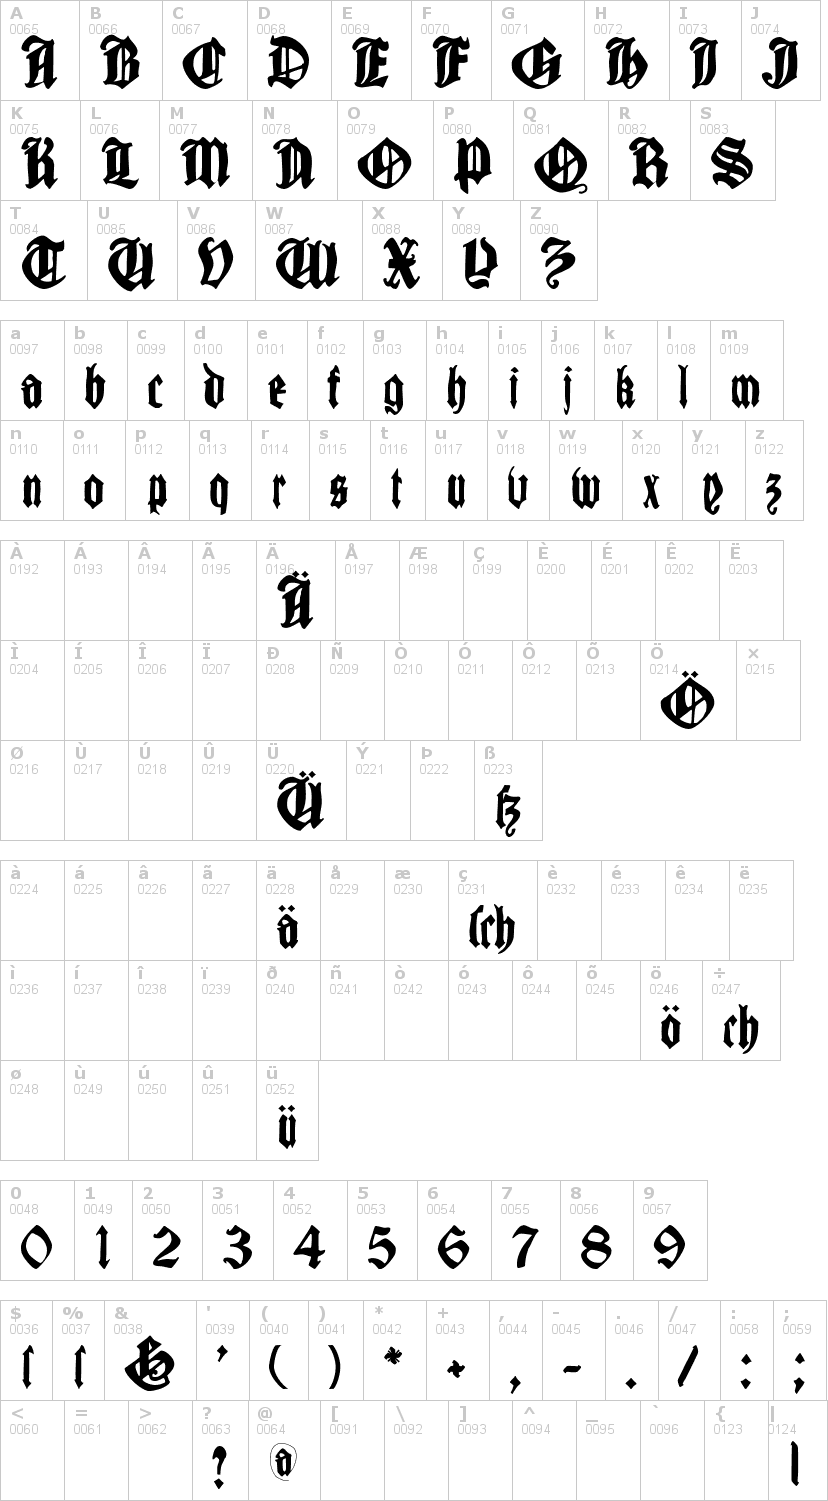 Lettere dell'alfabeto del font cantaragotica con le quali è possibile realizzare adesivi prespaziati